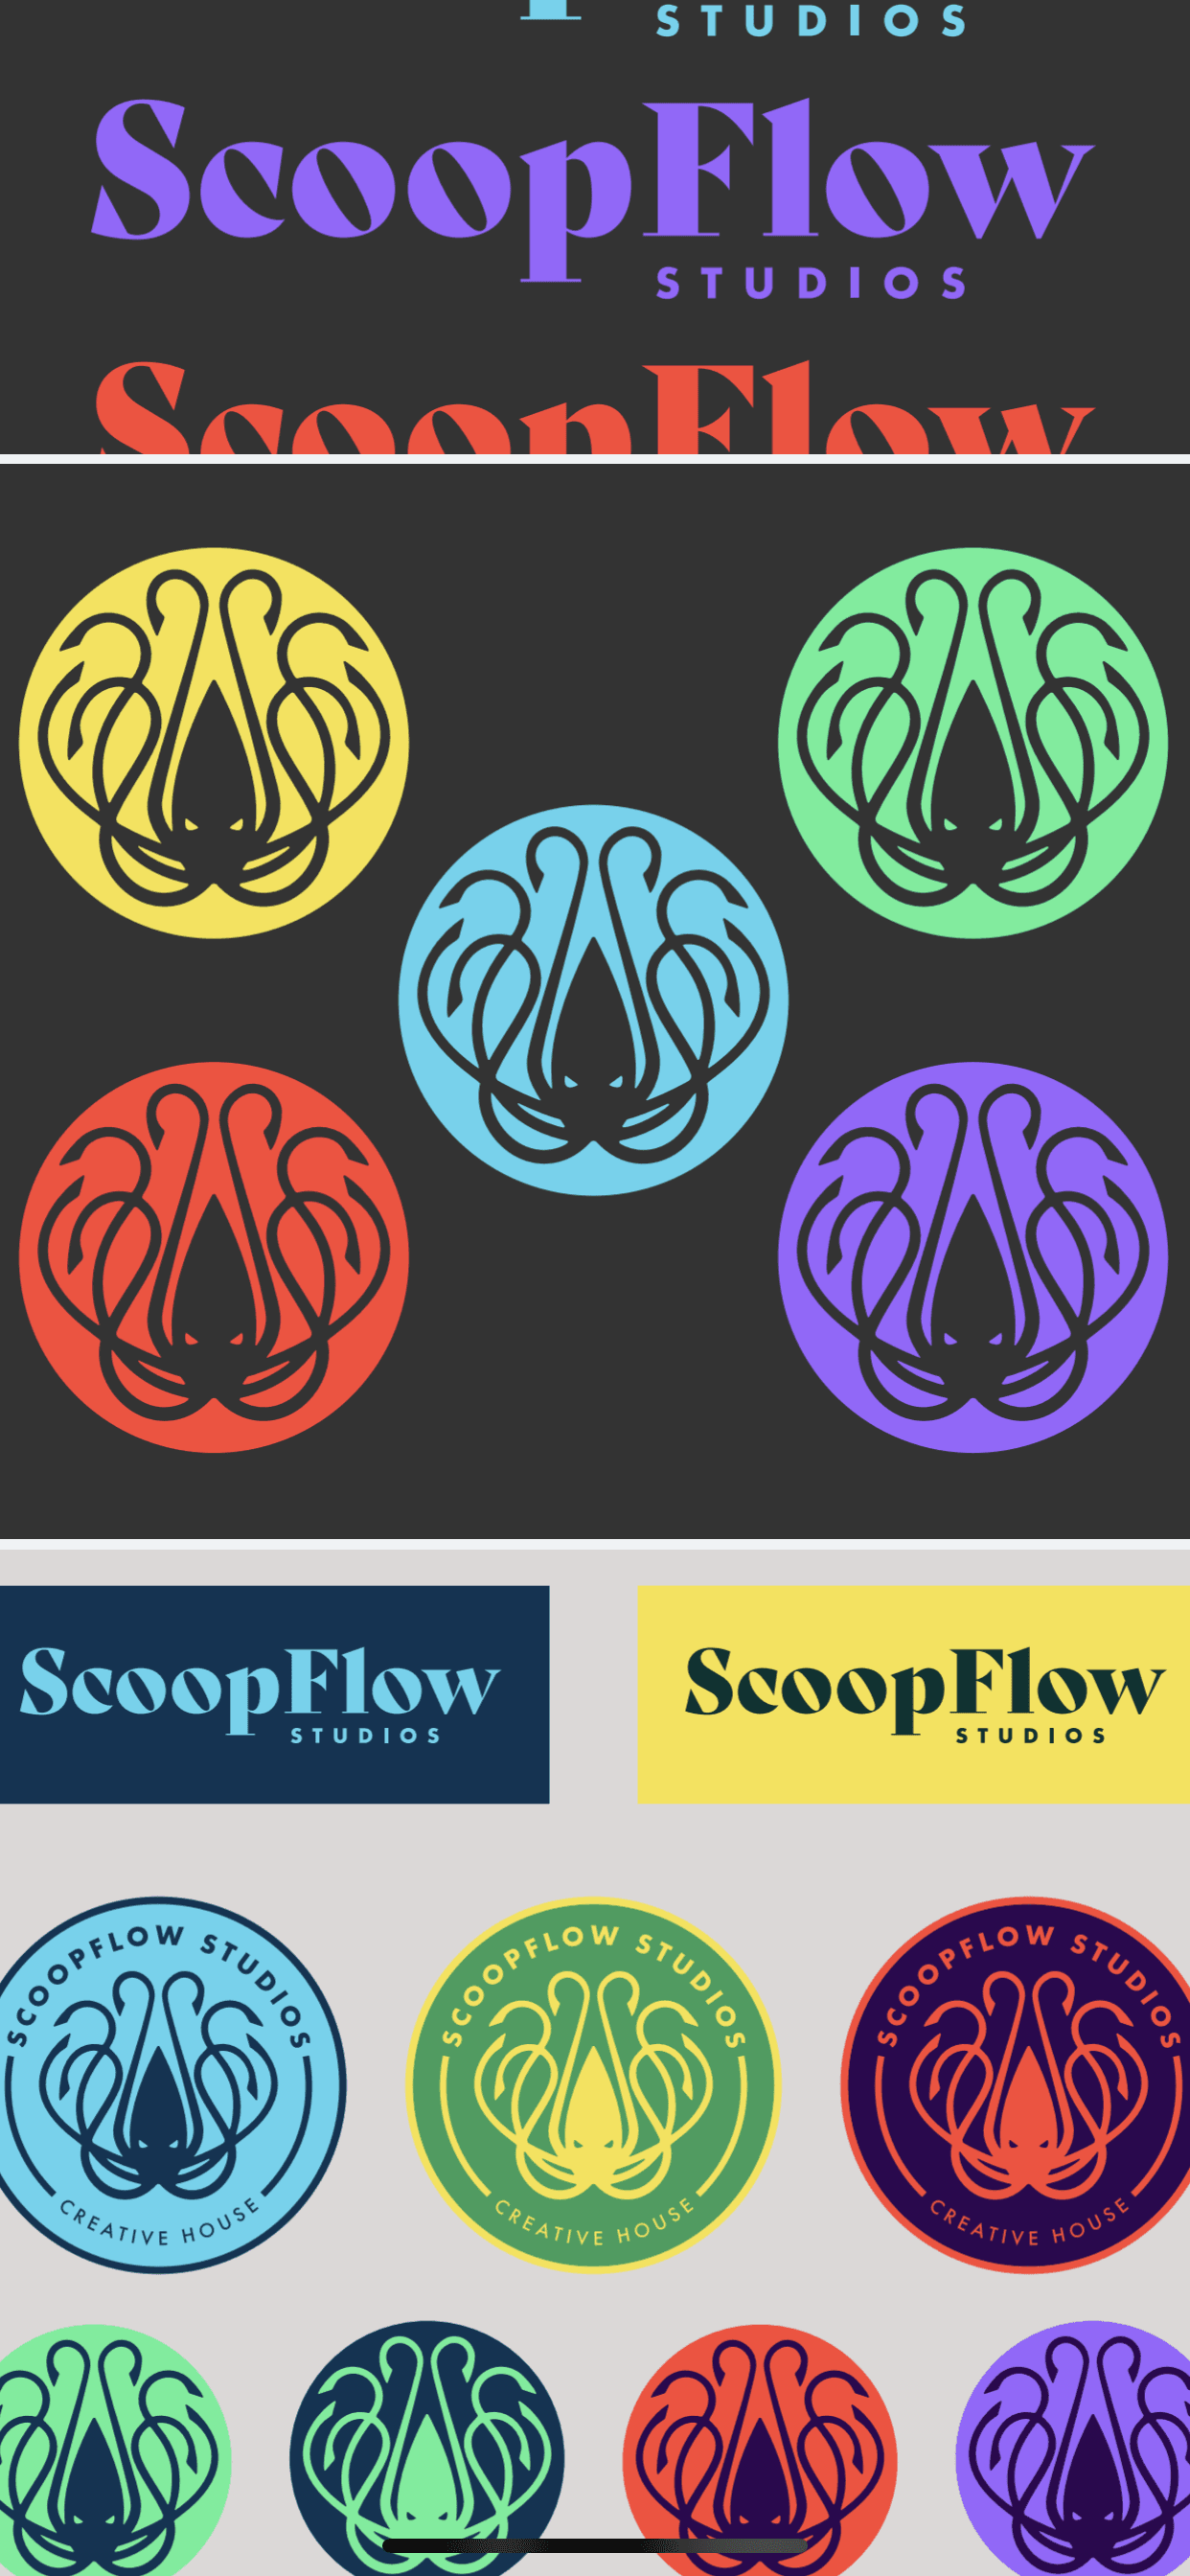 ScoopFlow banner